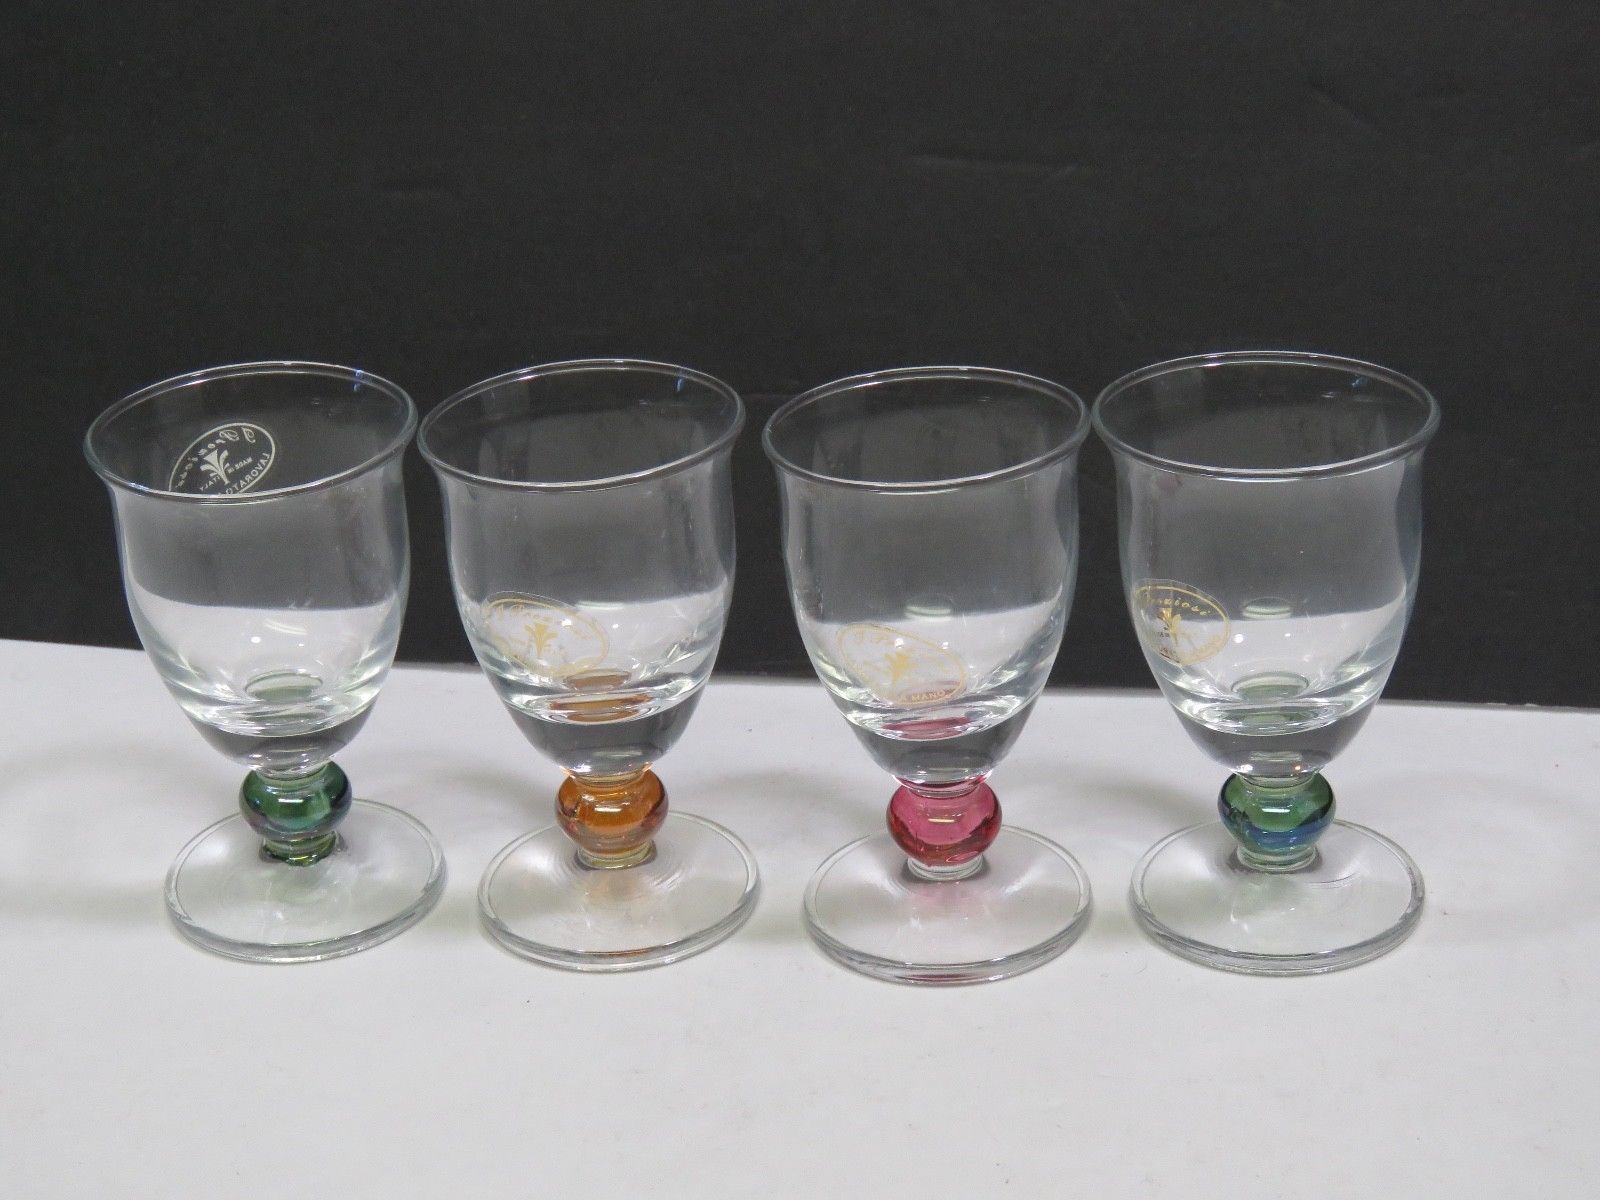 J PREZIOSI Lavorato A Mano Glass Cordials Set of 4 New With Tags Italian 3.5"  - $21.78